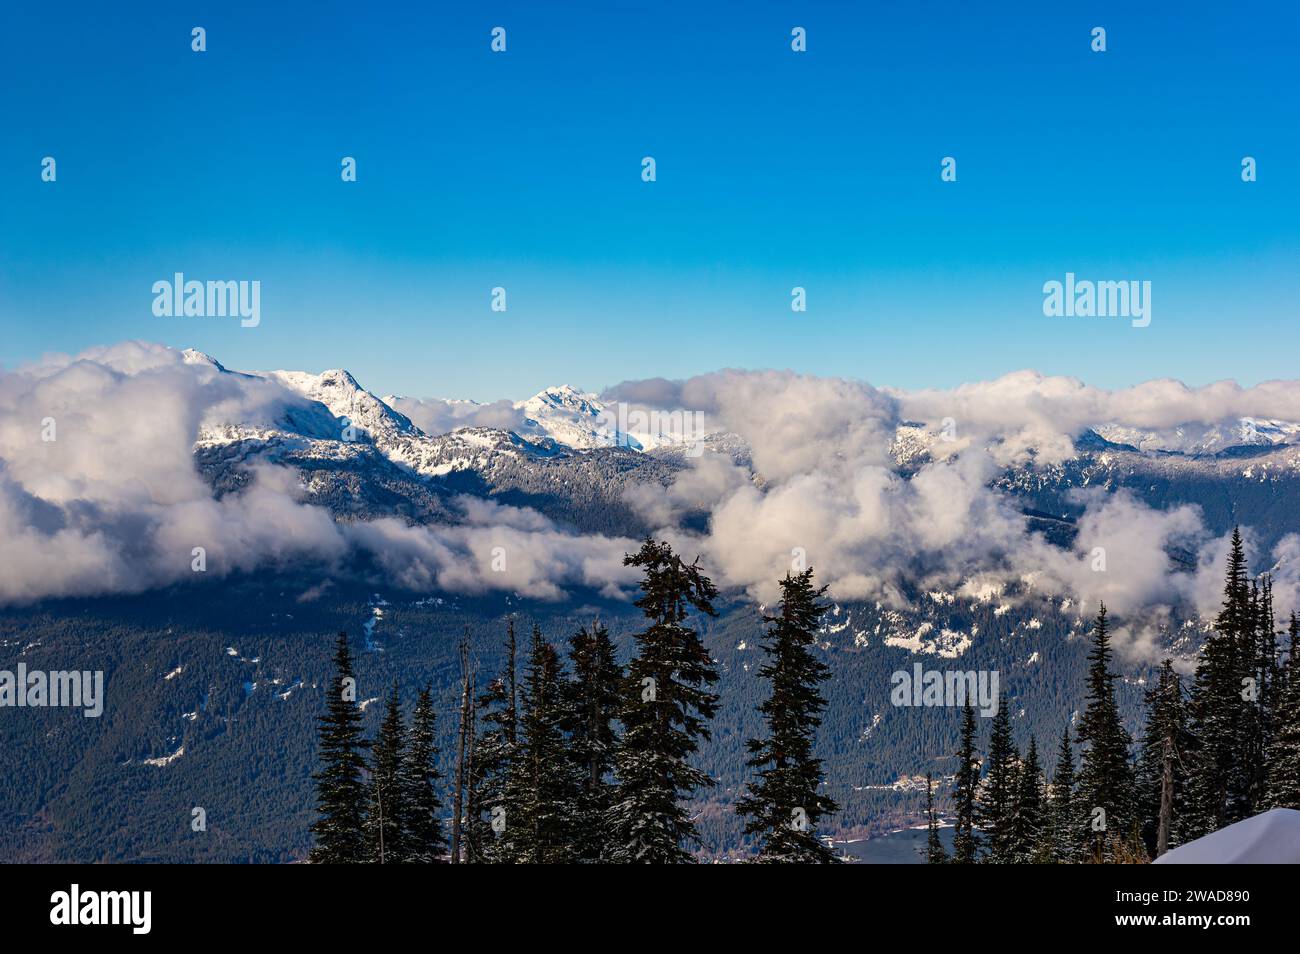 Una vista delle cime delle nevicate di montagna inghiottite da nuvole con la vallata in lontananza e gli alberi in primo piano dalla Blackcomb Mountain a Whistler, British Columbia, CAN Foto Stock